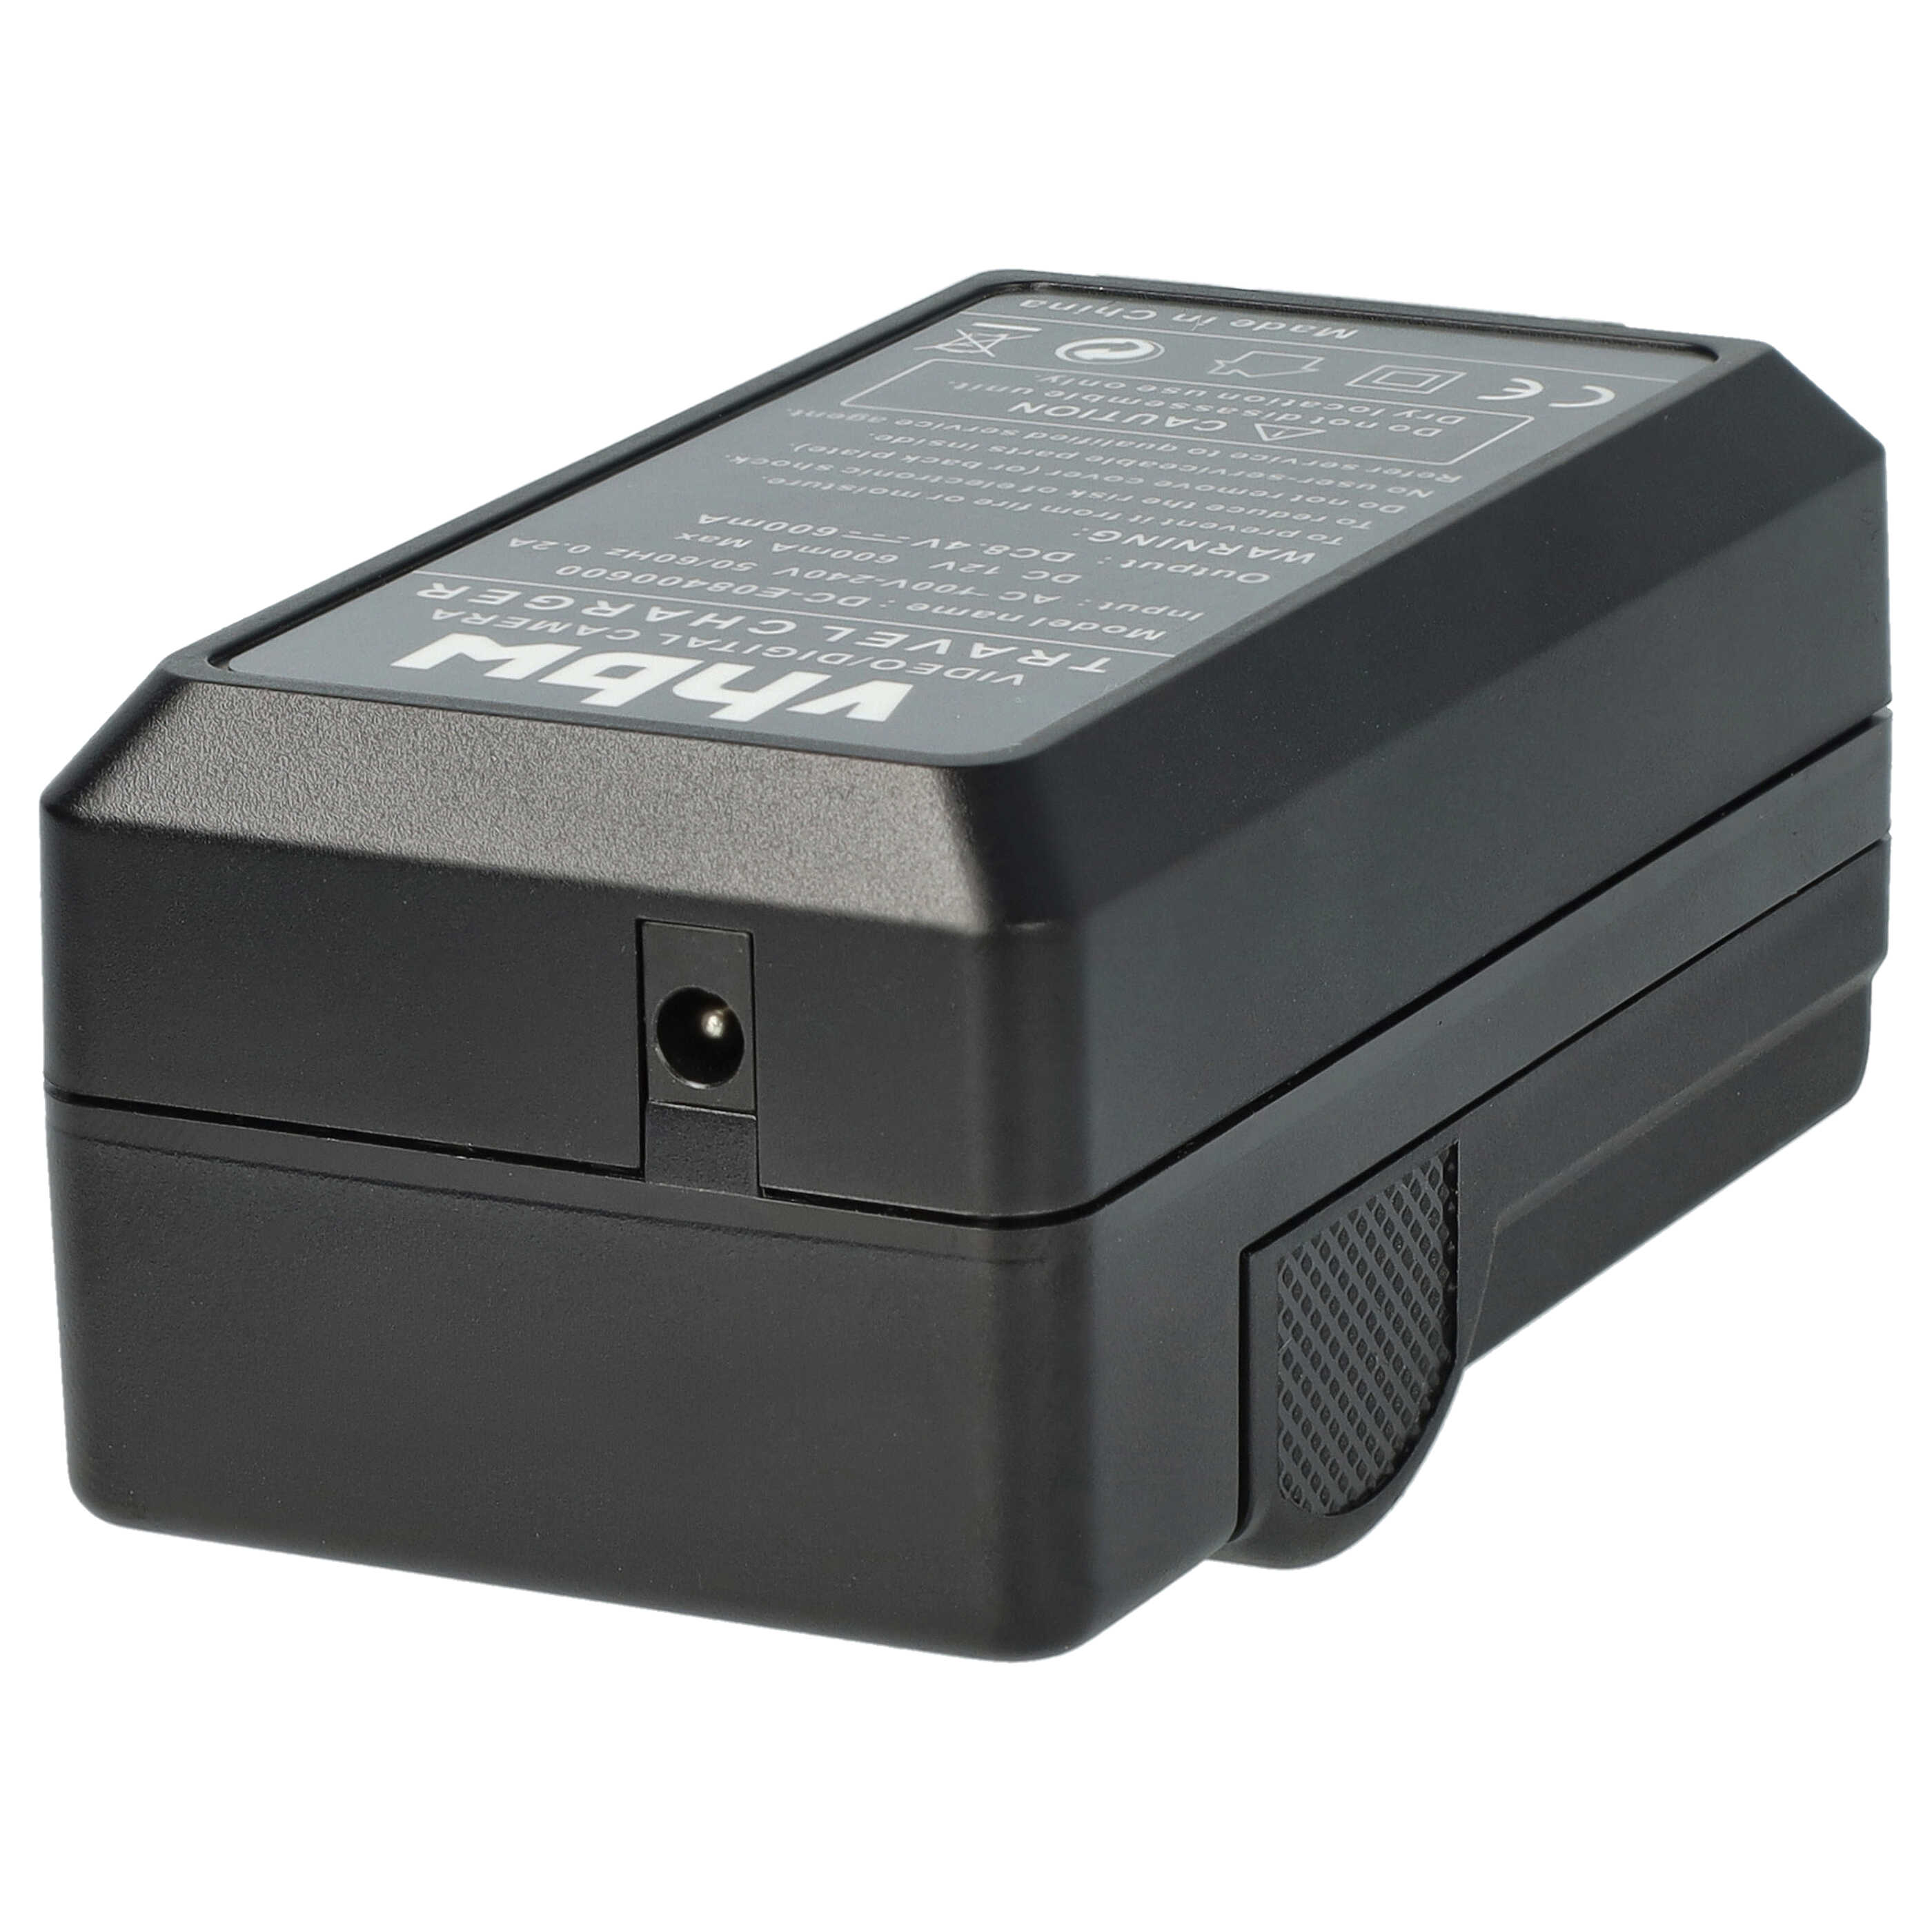 Akku Ladegerät passend für DZ-MV350A Kamera u.a. - 0,6 A, 8,4 V